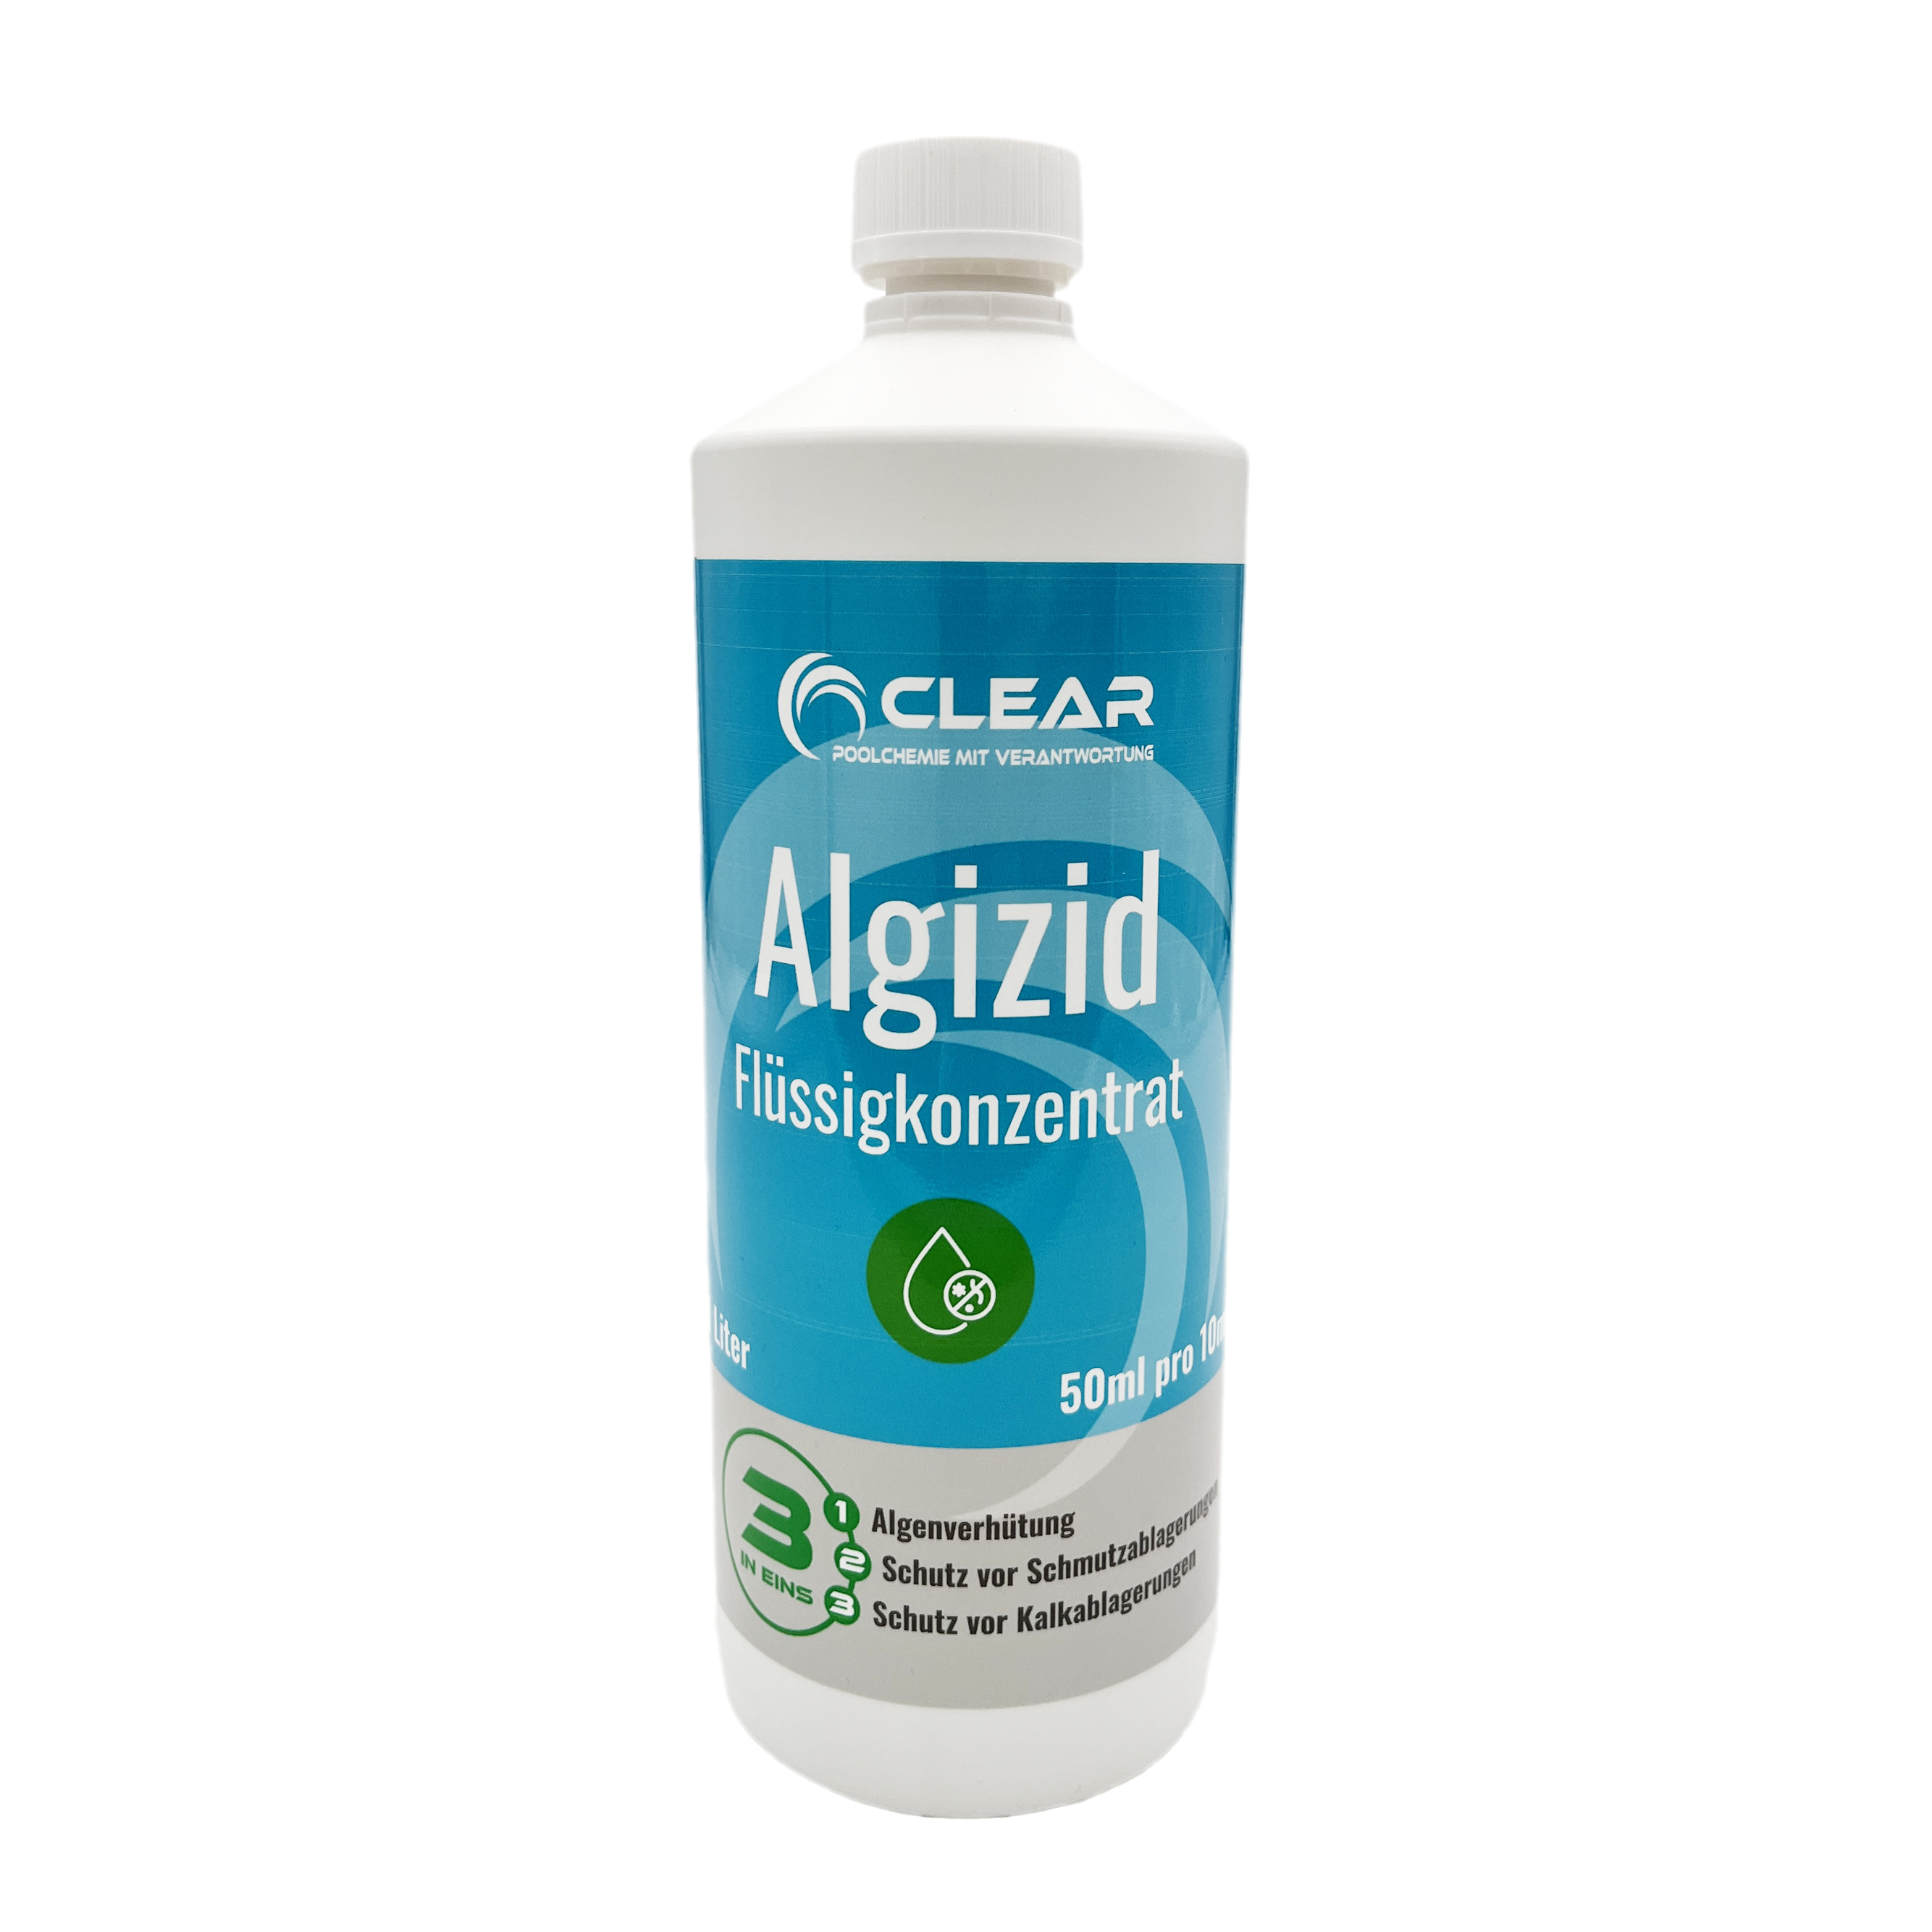 Flasche mit Algizid von CLEAR - Poolchemie mit Verantwortung